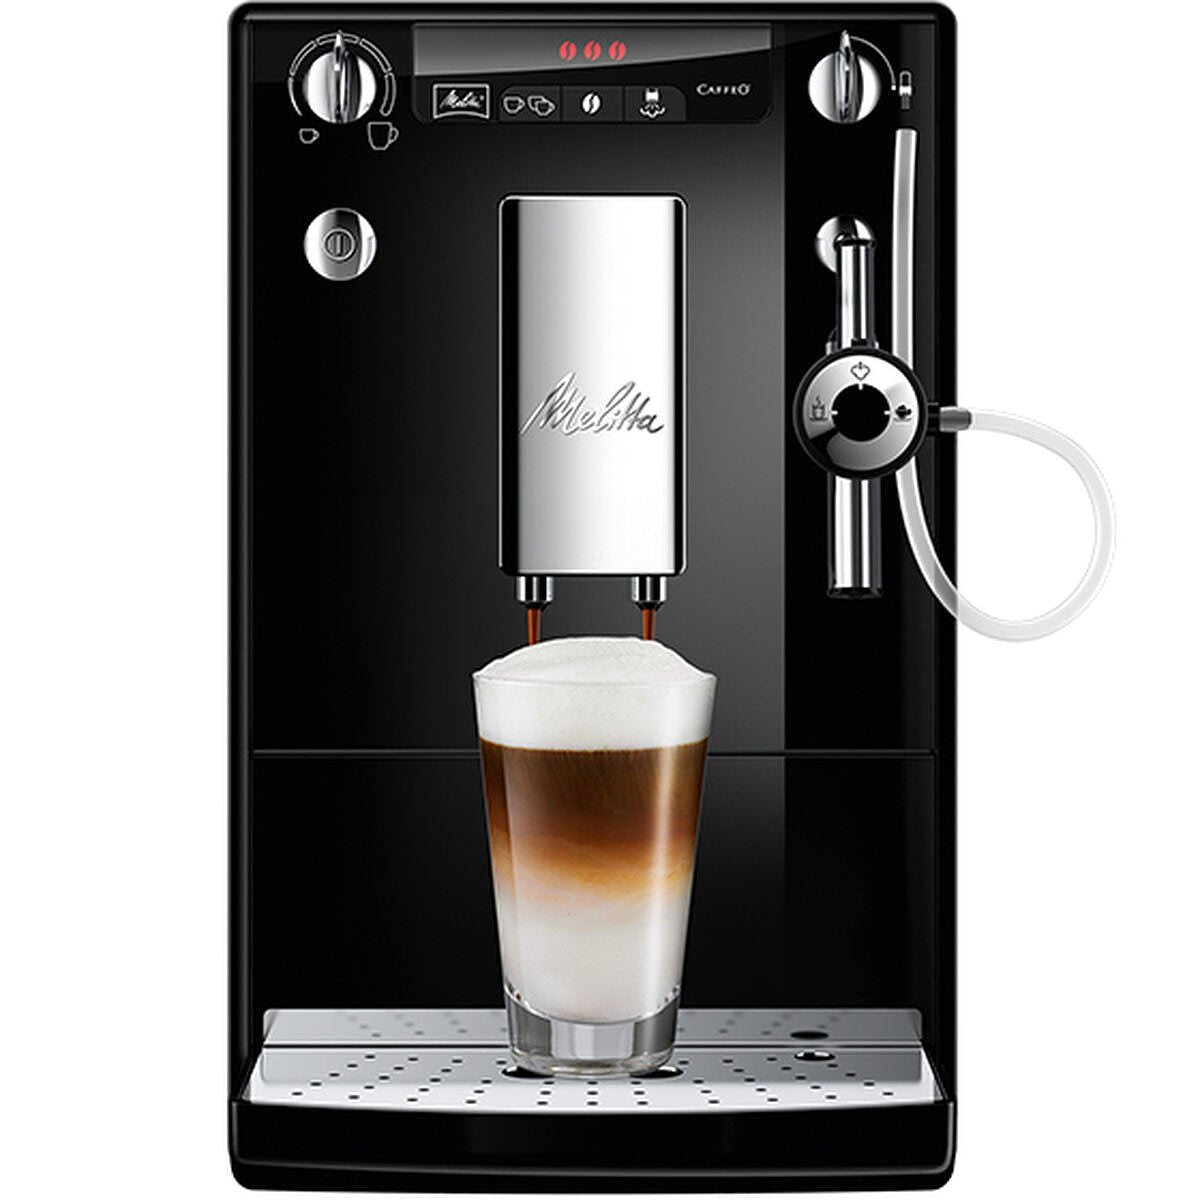 Superautomatisch koffiezetapparaat Melitta E957-101 Zwart 1400 W 15 bar